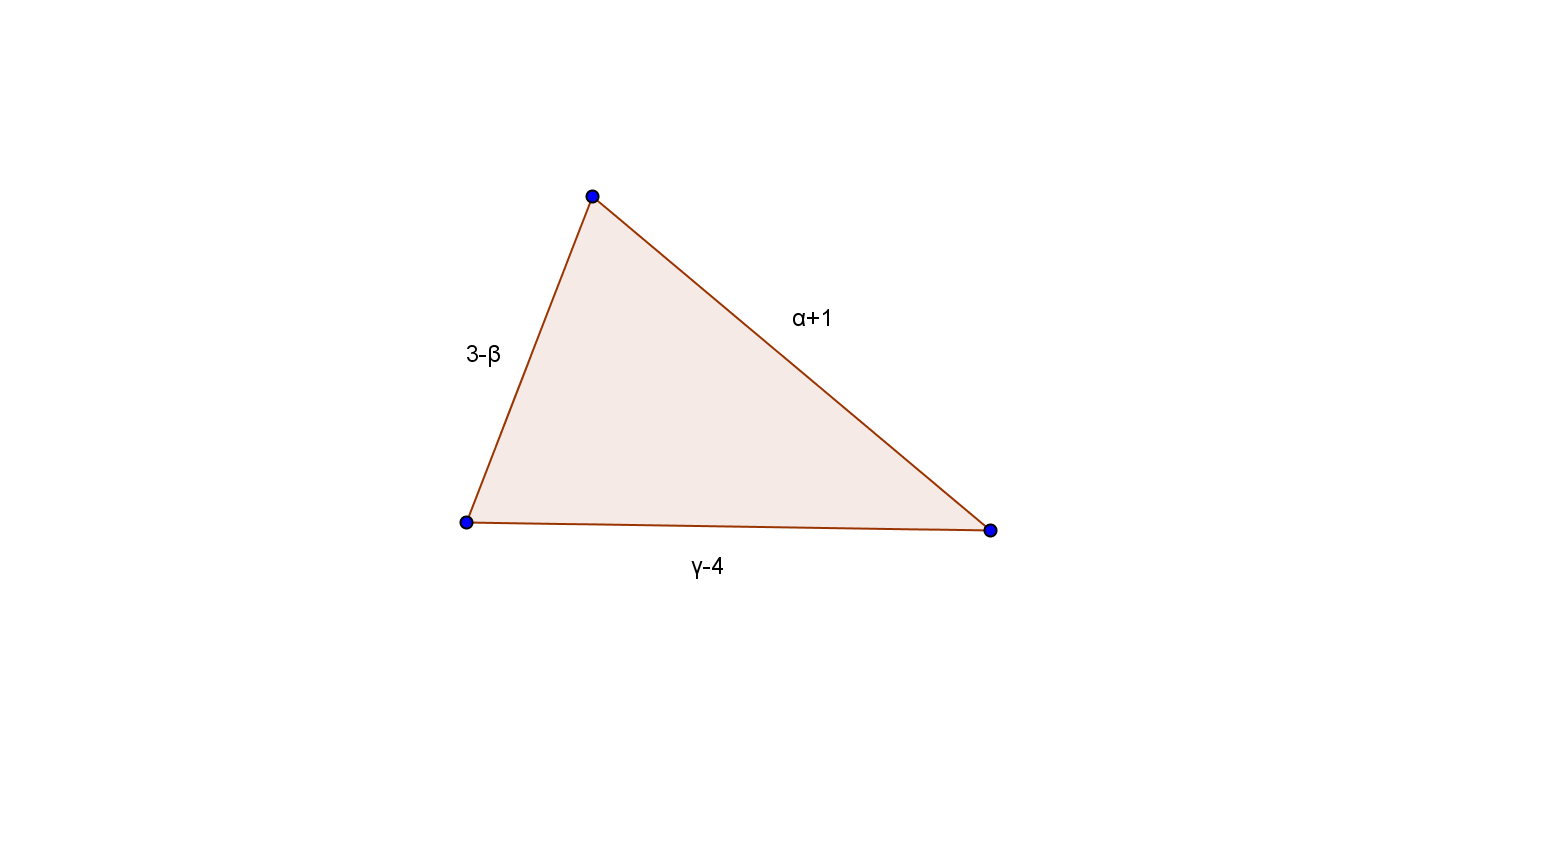 .. Έστω ορθογώνιο παραλληλόγραμμο με μήκη πλευρών α β, γ-α, το οποίο έχει περίμετρο 0 cm. Να υπολογίσετε την περίμετρο τριγώνου με μήκη πλευρών α+, -β, γ-4.